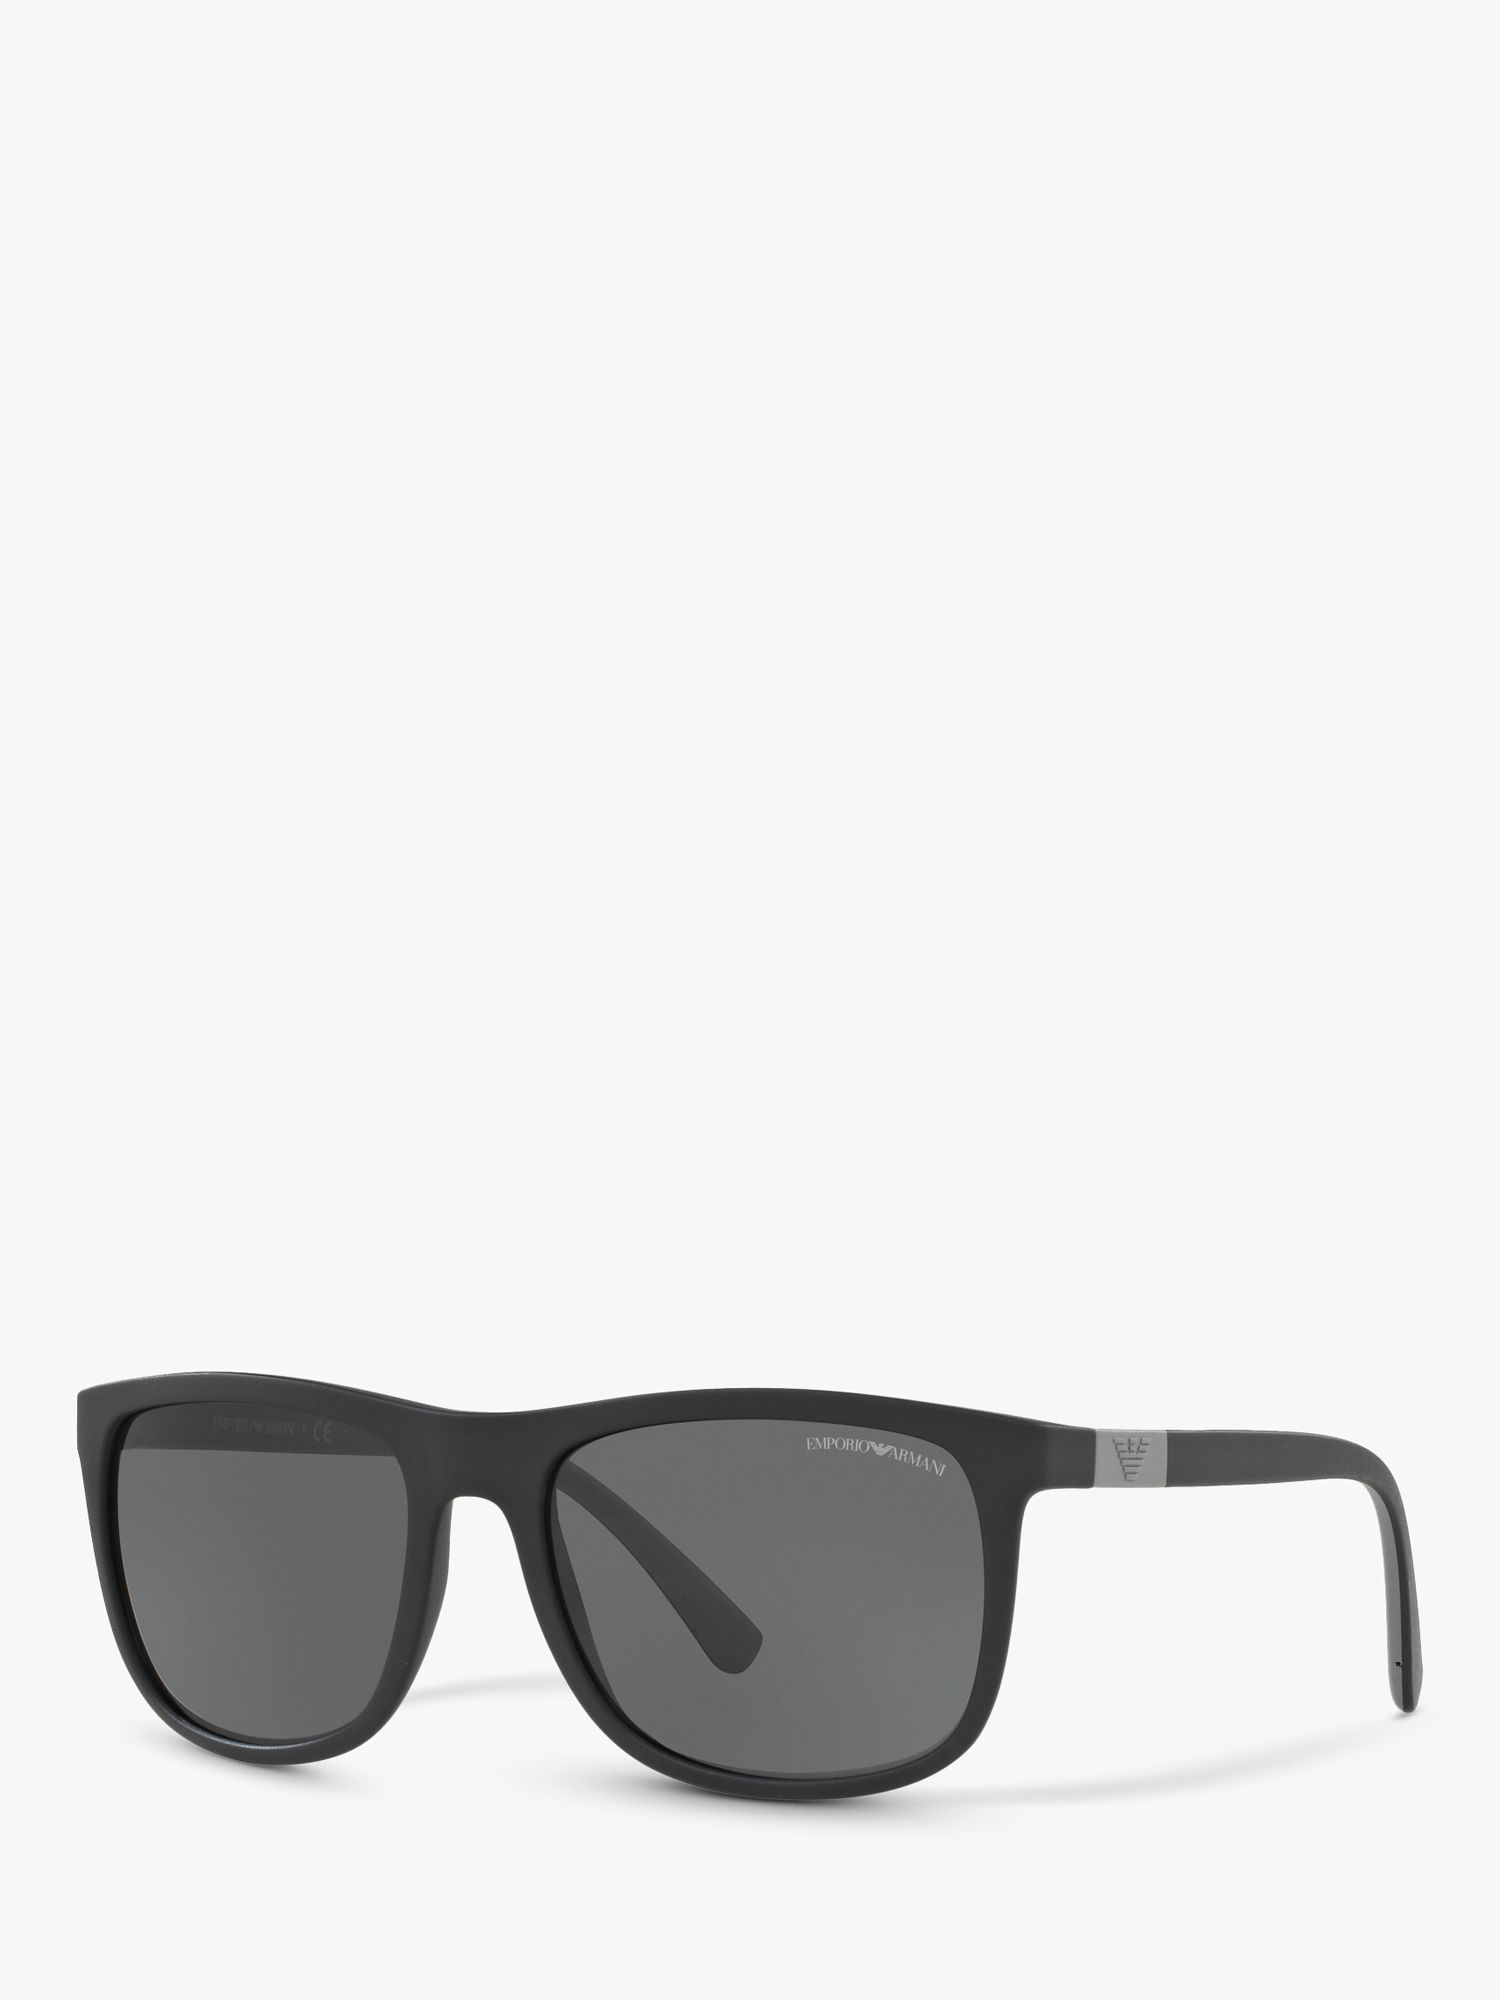 EA4079 Мужские квадратные солнцезащитные очки Emporio Armani, матовый черный/серый солнцезащитные очки emporio armani квадратные оправа металл с защитой от уф для женщин фиолетовый